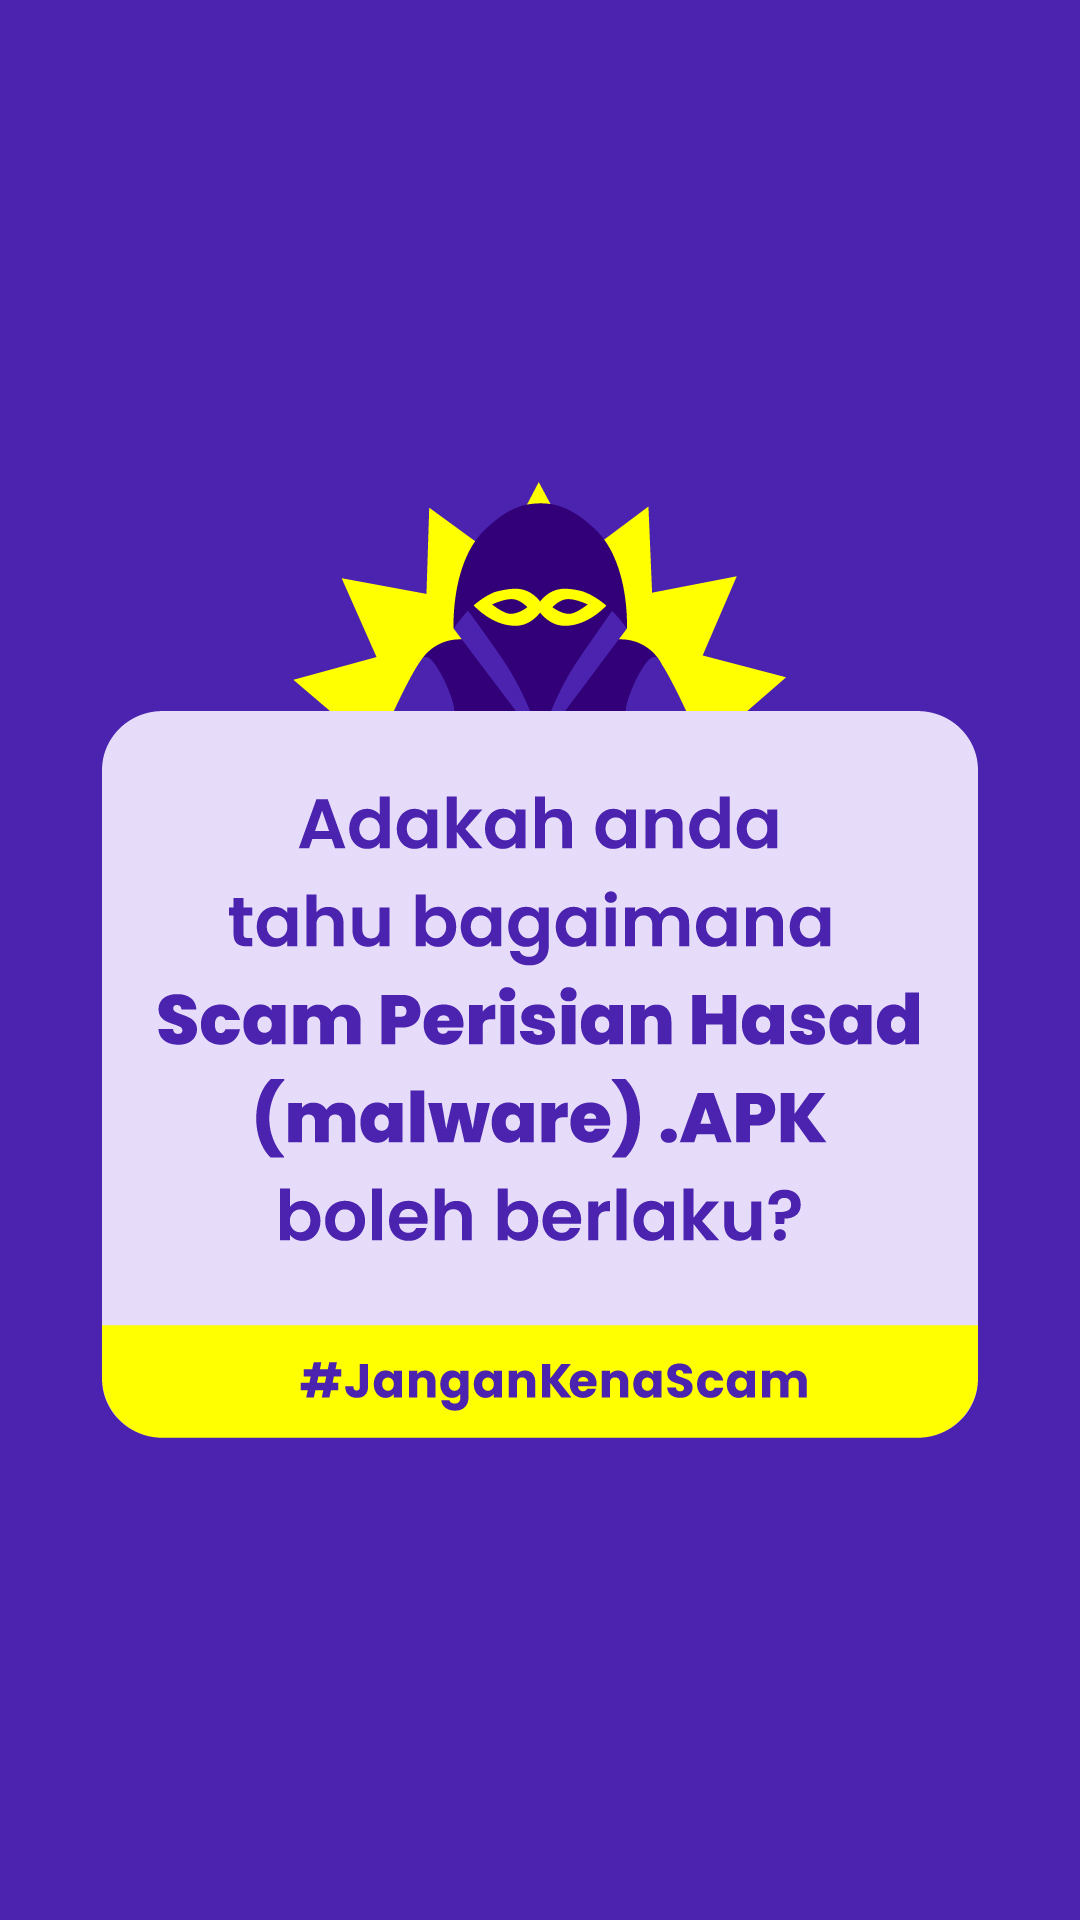 Image for #JanganKenaScam: Ketahui bagaimana Scam  Malware boleh berlaku untuk lindungi diri anda dari terkena scam!